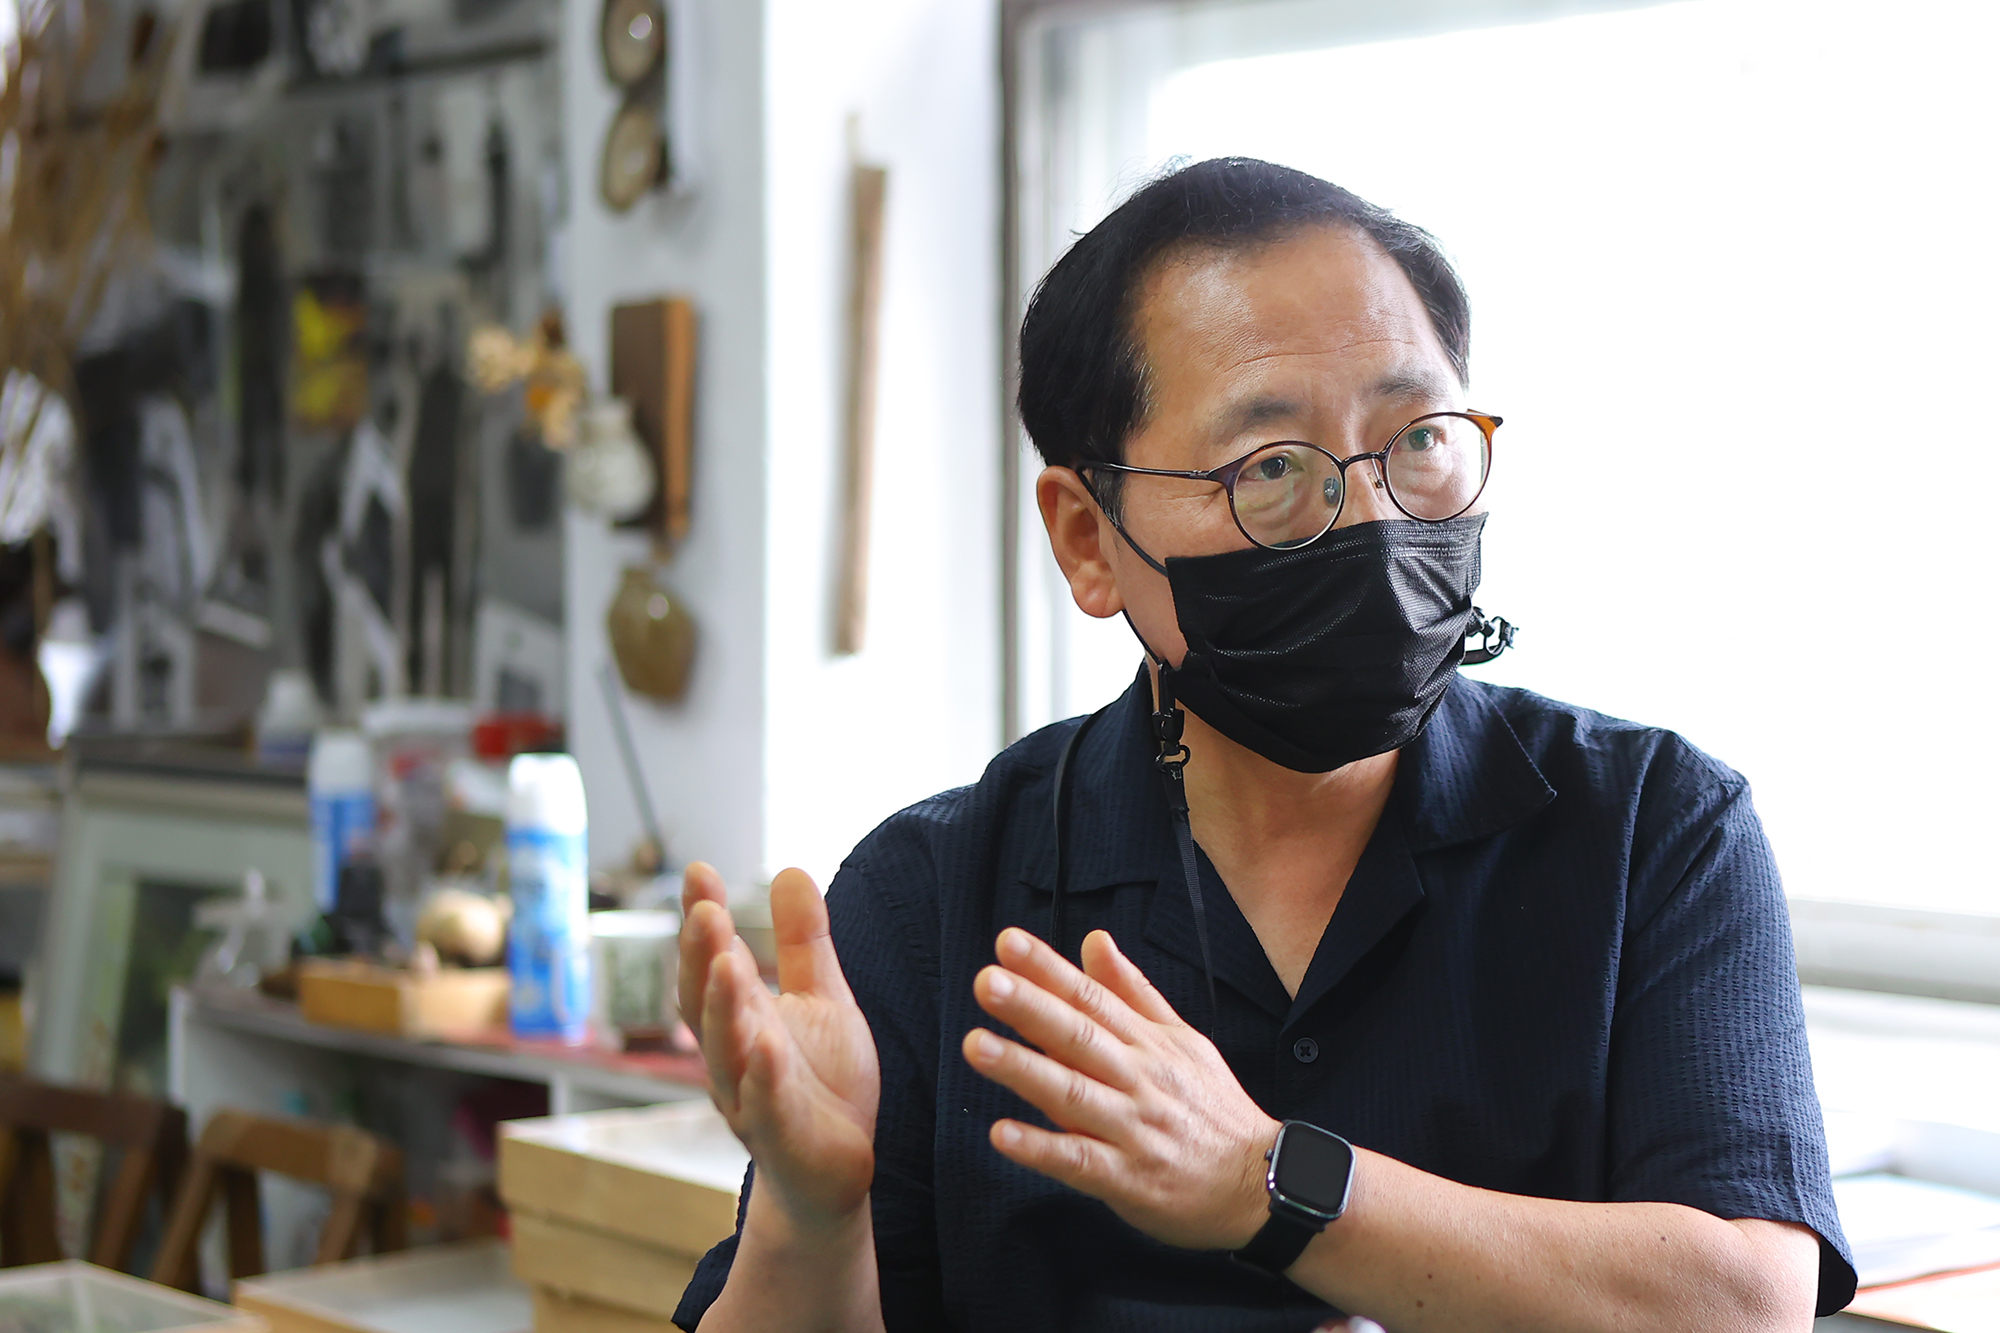 박석윤 창문아트센터장은 “유학 시절 접한 유휴공간을 활용한 예술가들의 도시재생 사례를 한국에서 시도하고 싶었다“고 설명했다.